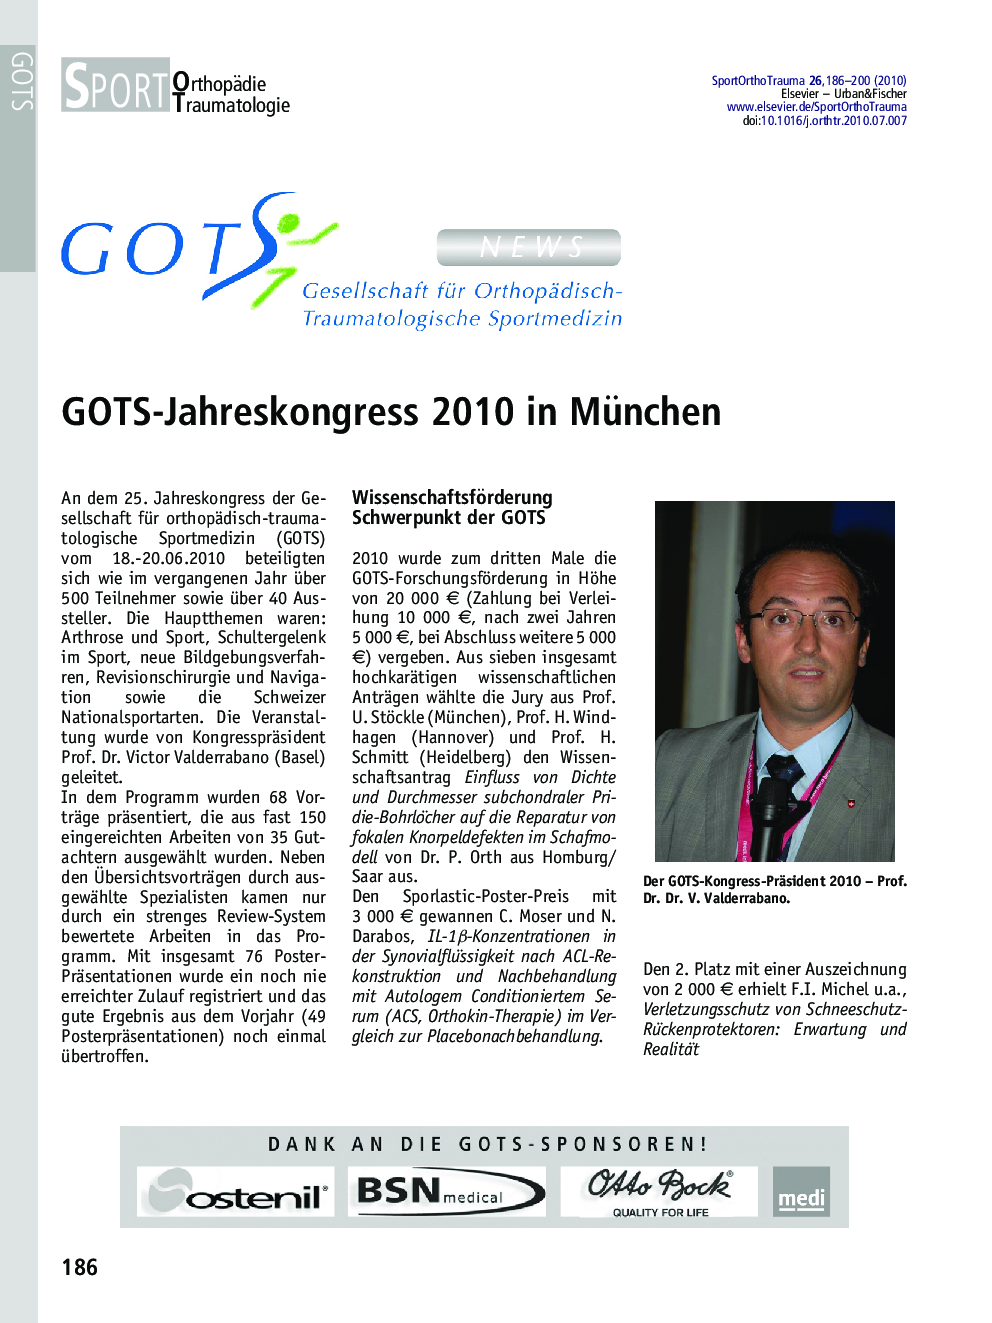 GOTS-Jahreskongress 2010 in München